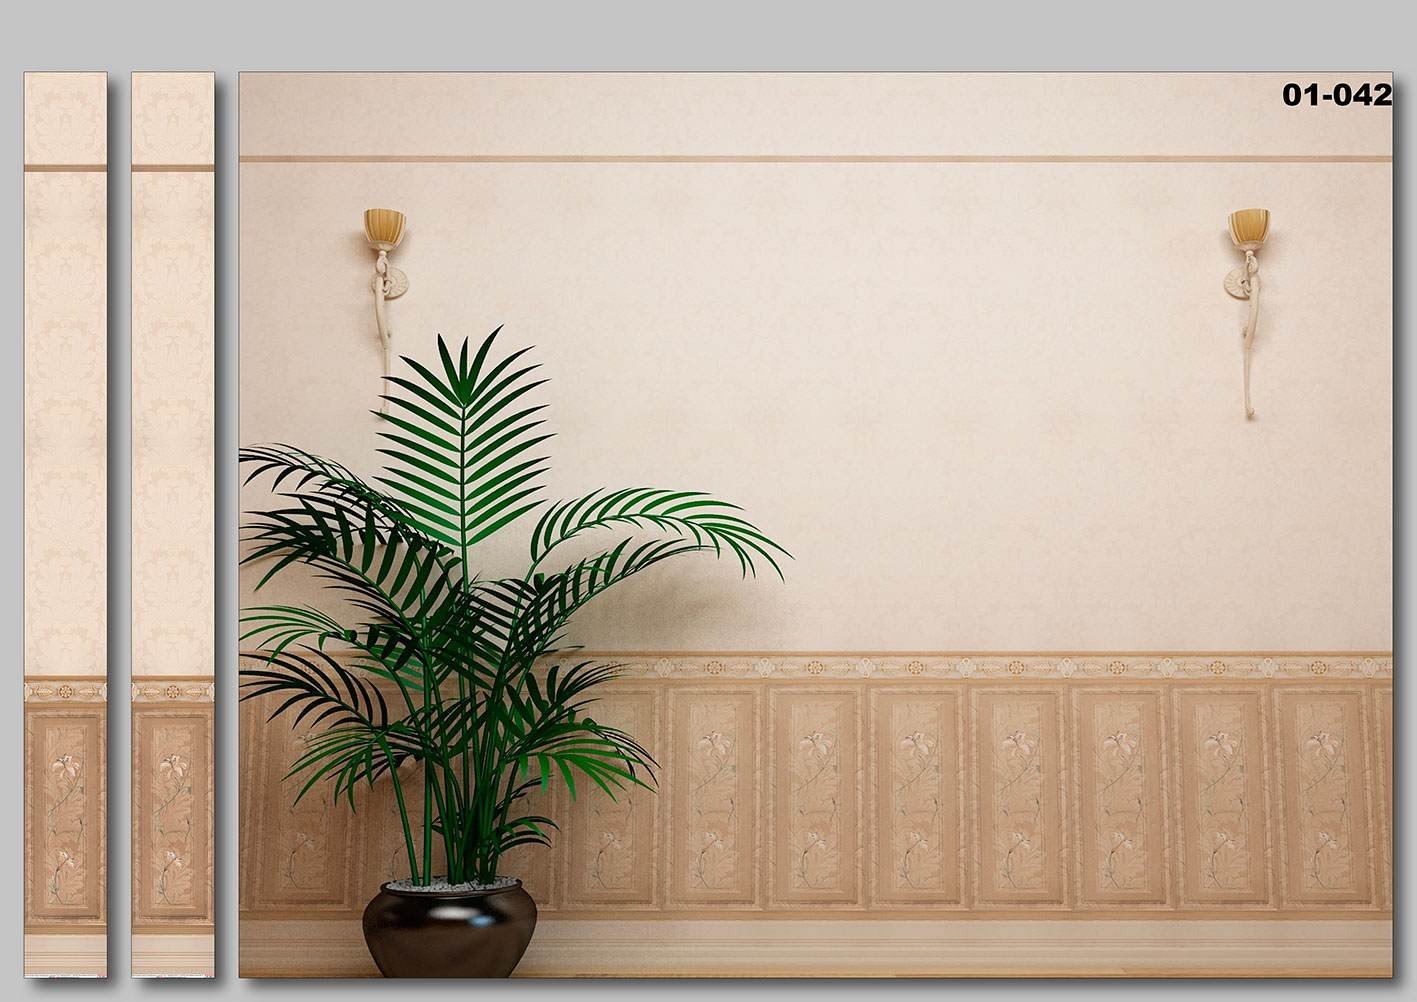 Стеновая панель для цветов. Панель ПВХ 3d век бамбук оливковый 2700x250x9 мм (0,675 кв.м.). Панели для стен. Настенные панели. Декоративные пластиковые панели.